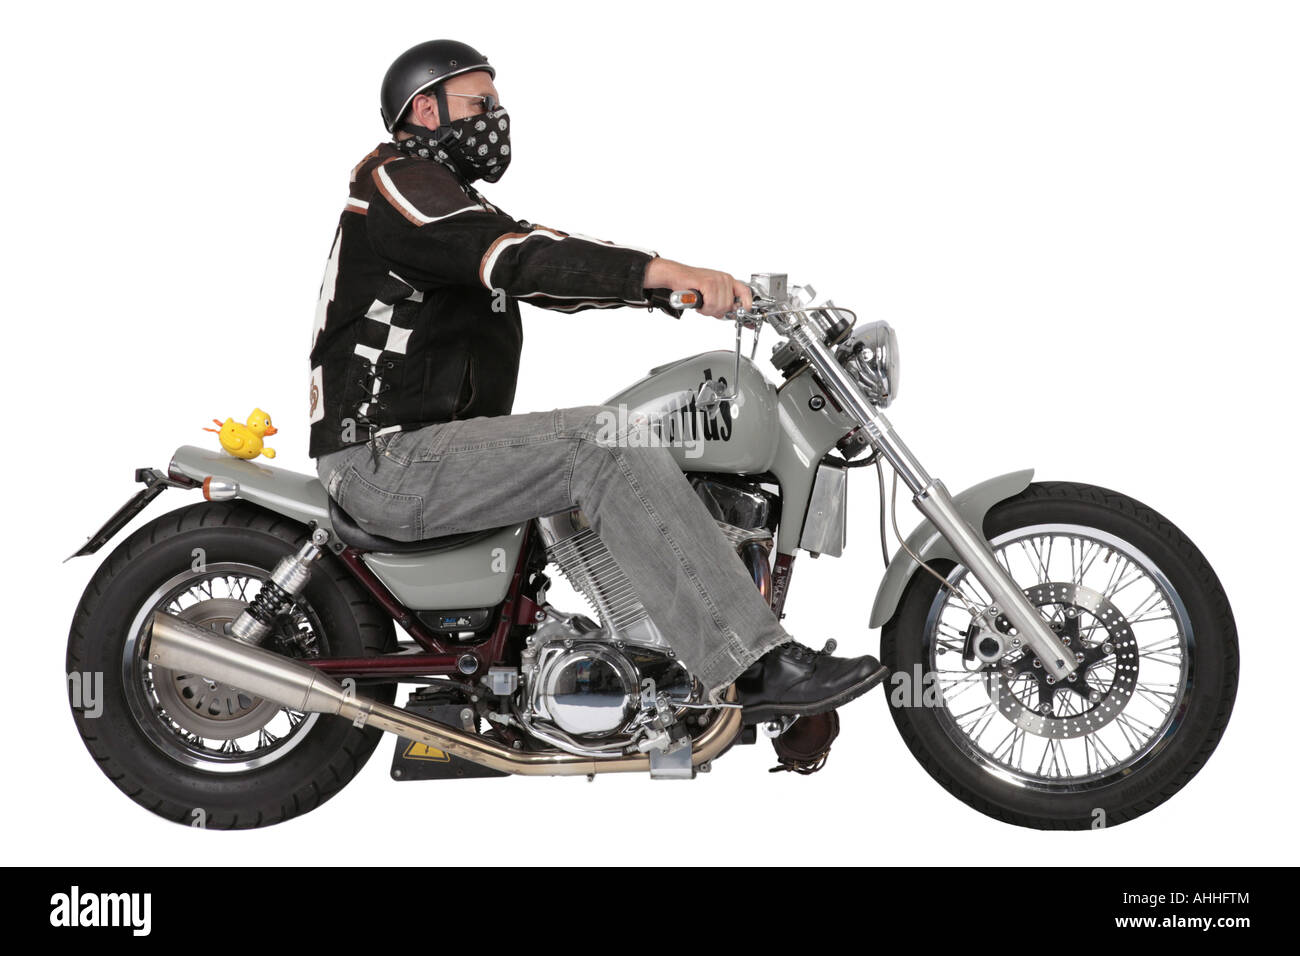 Harley Davidson-Fahrer mit motor Bike und Rubber duck Stockfoto